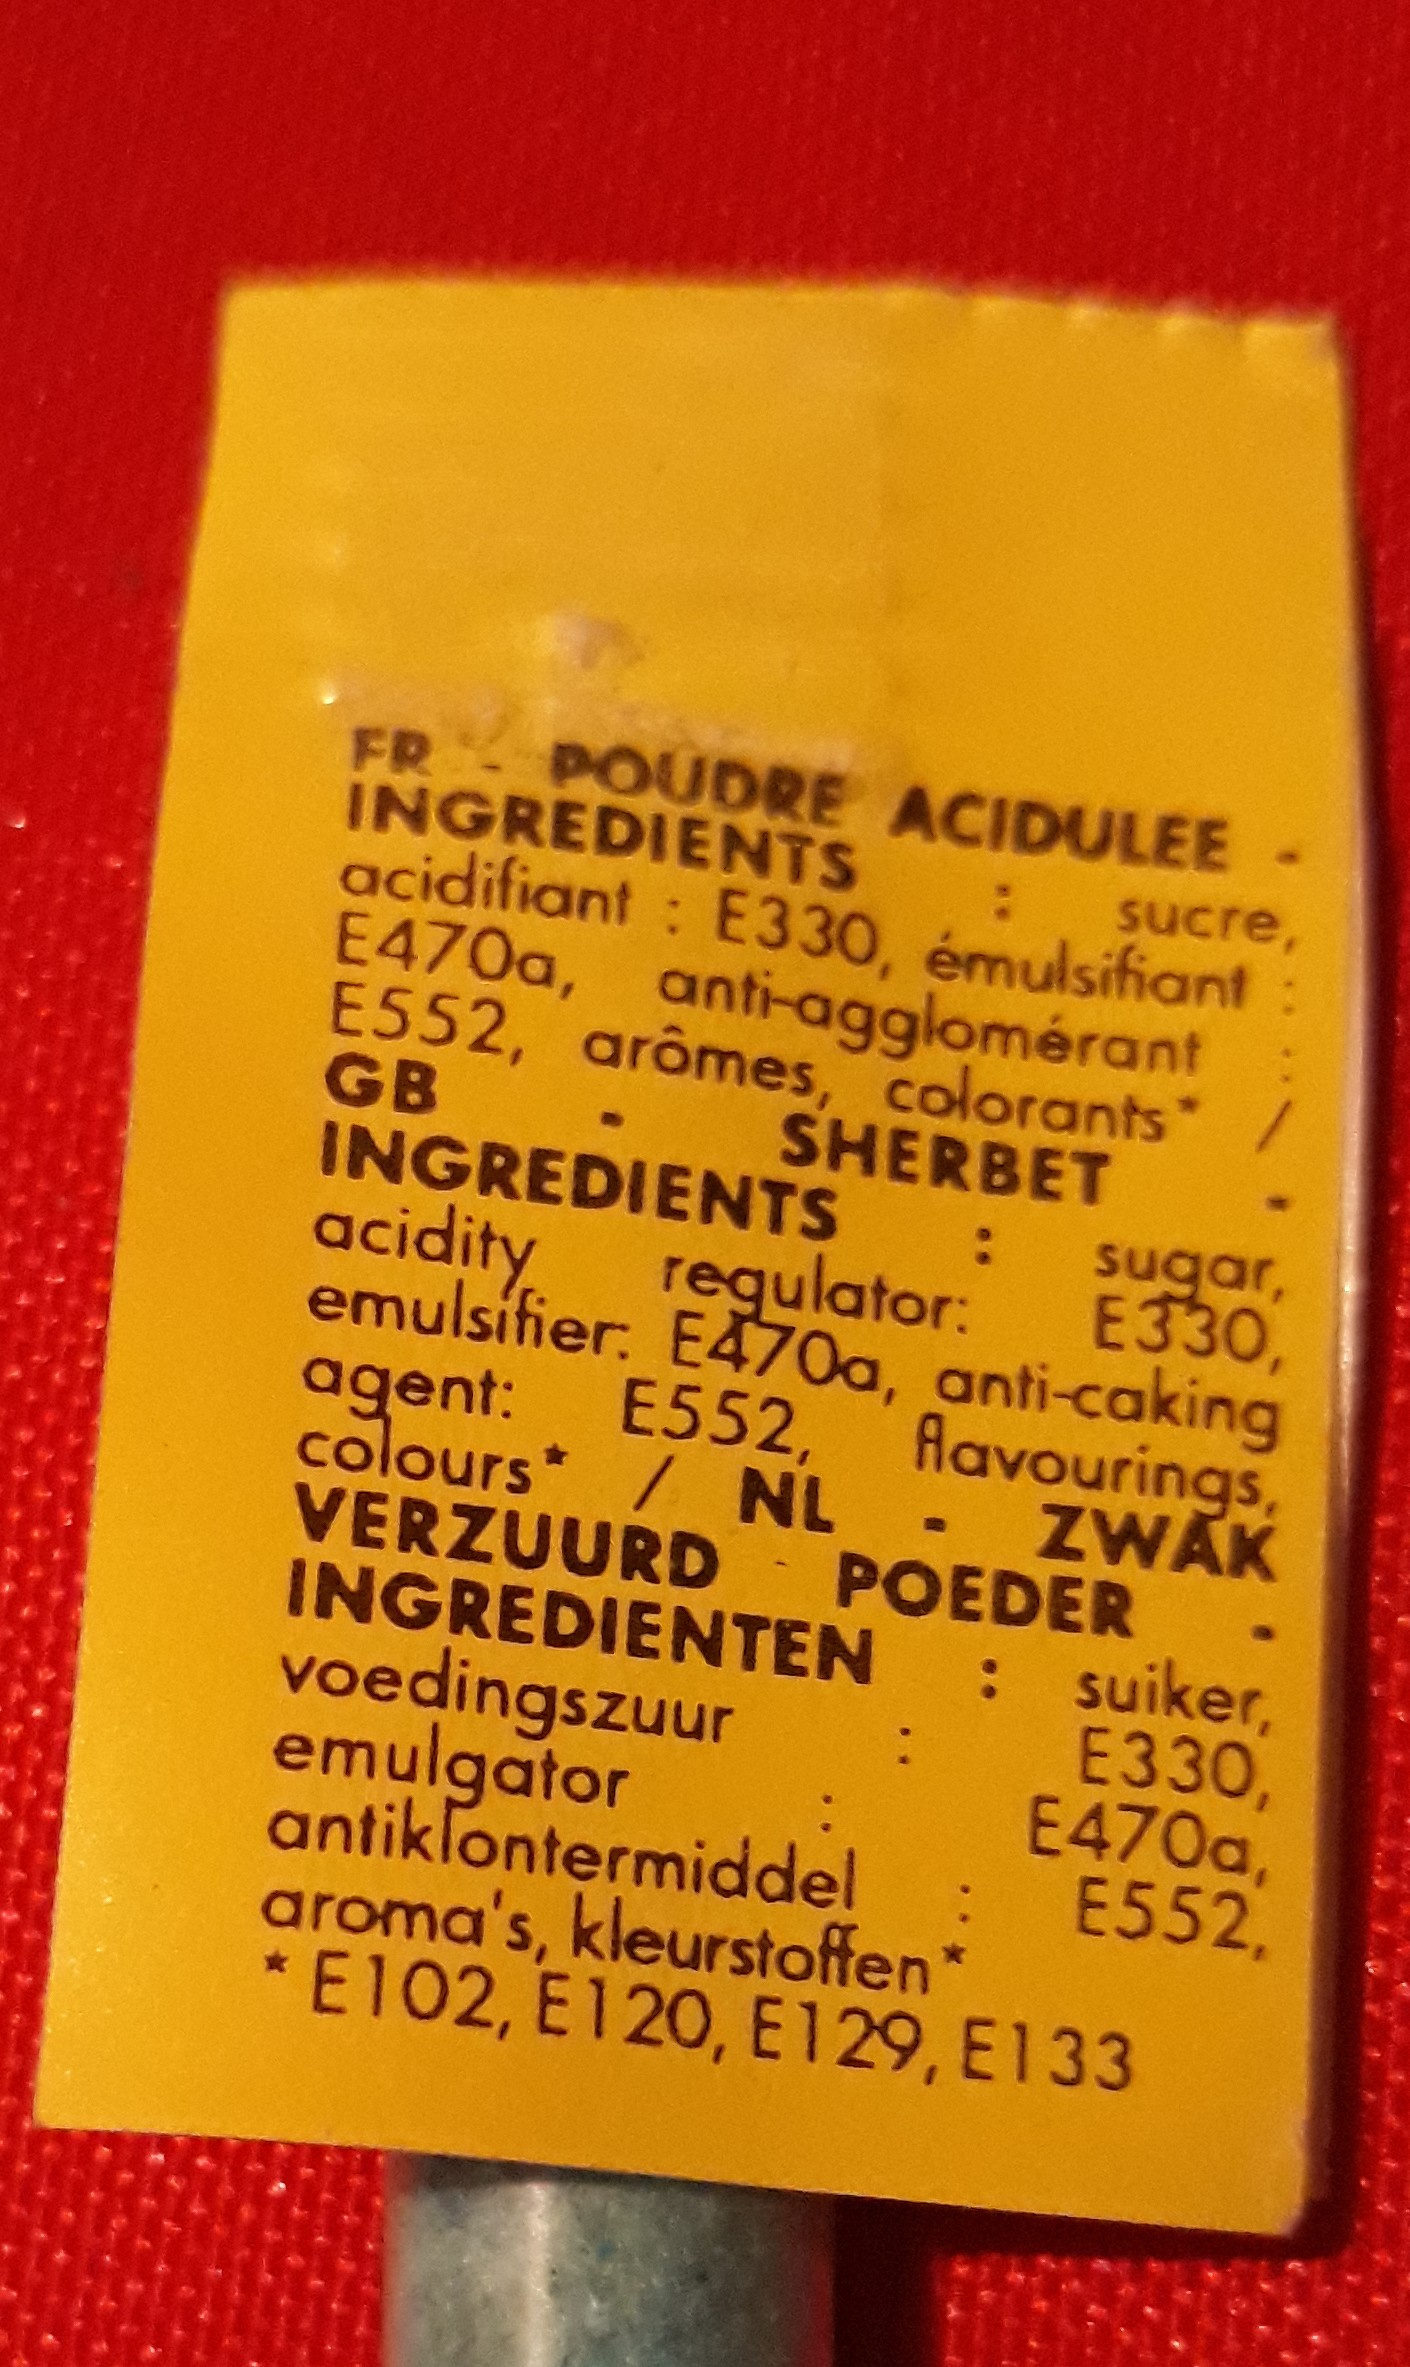 Poudre acidulée - Ingredients - fr